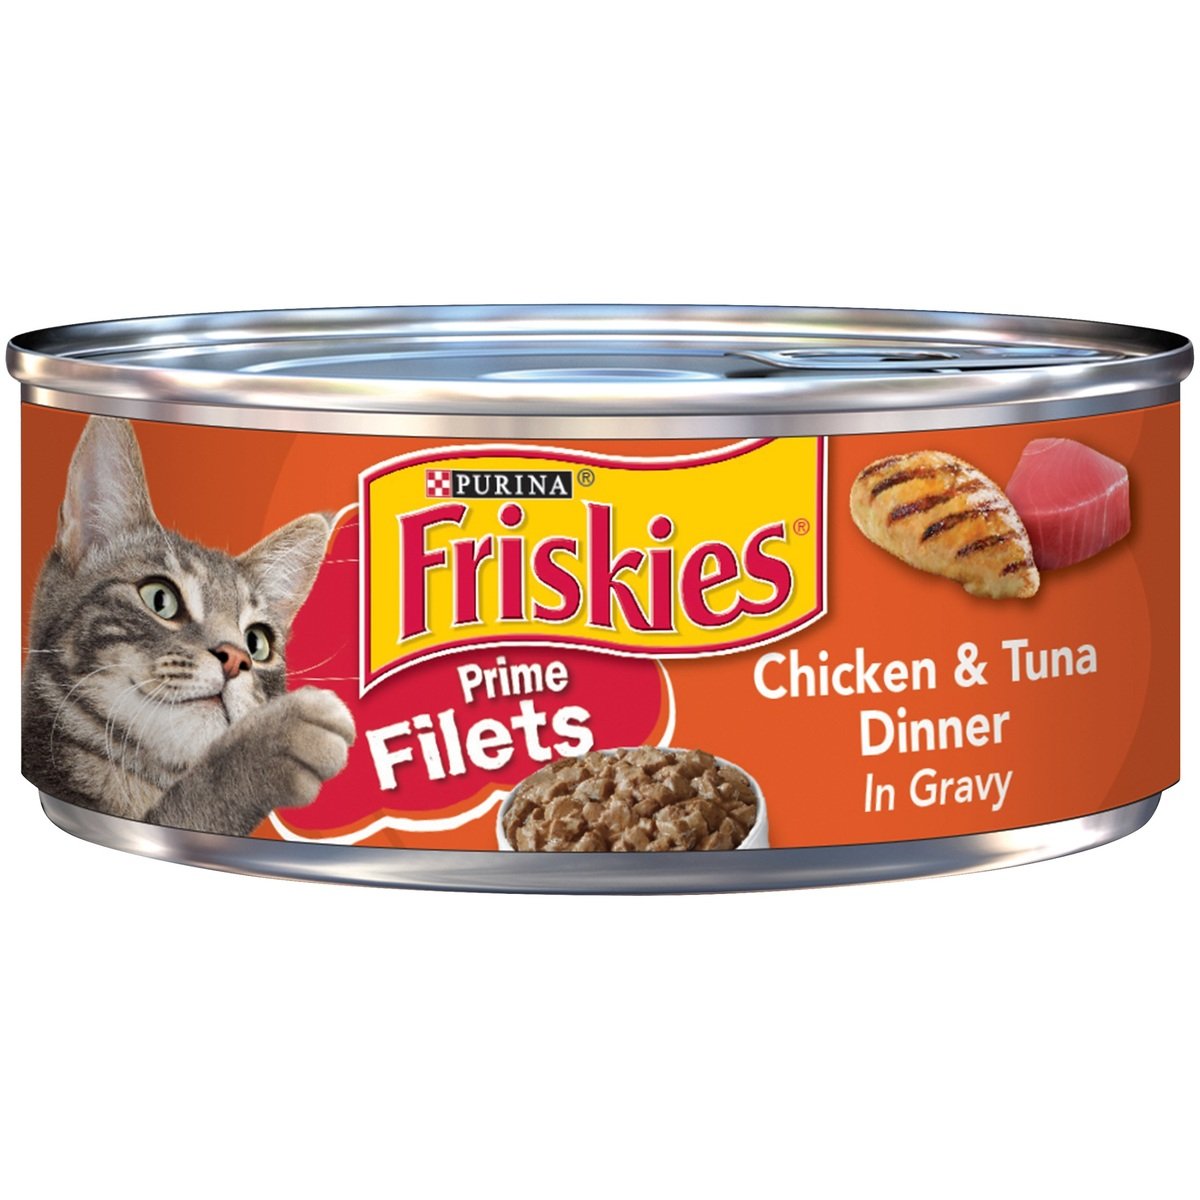 Cat, Friskies, Purina, Wet Food